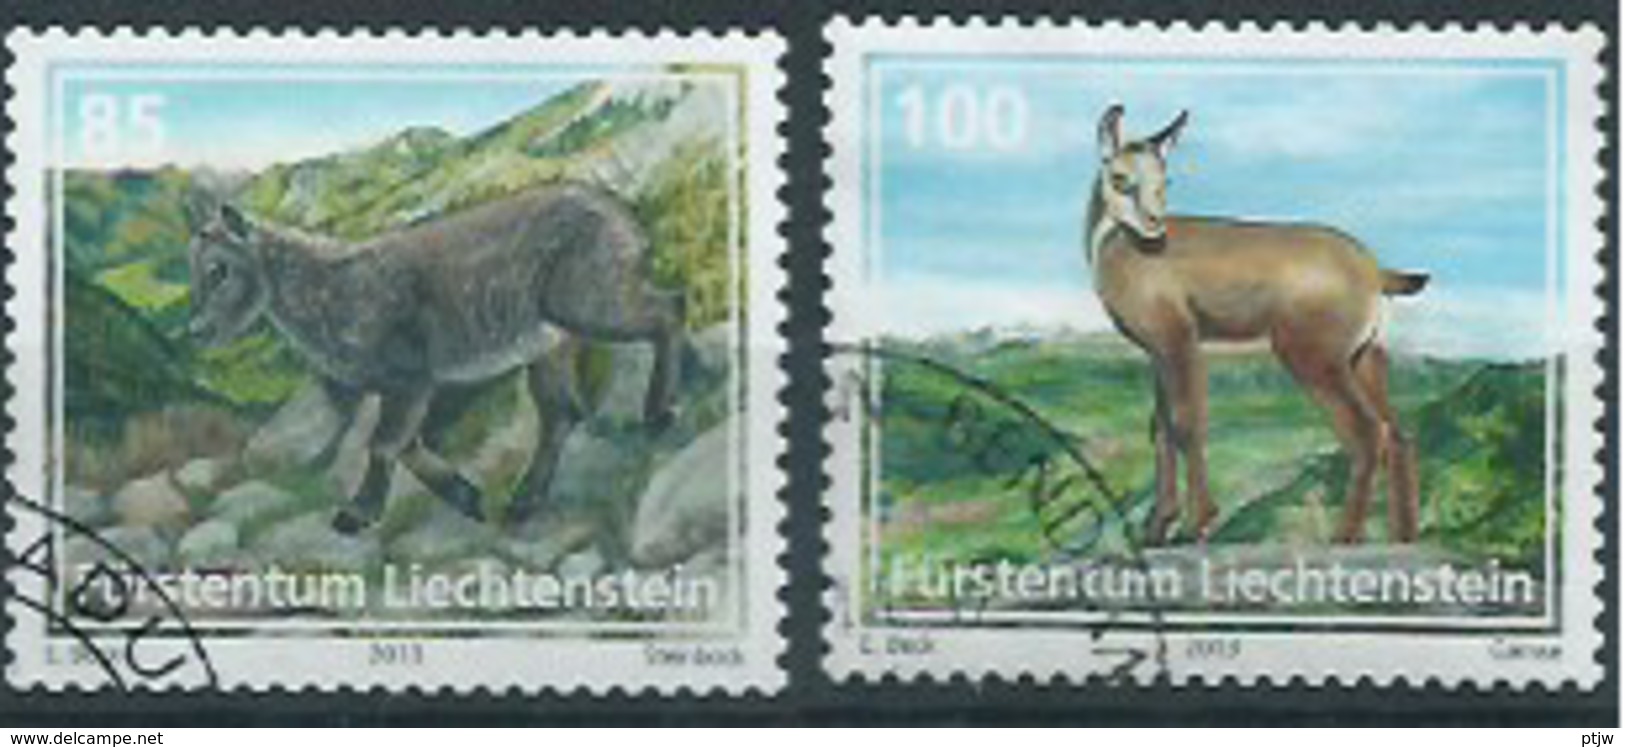 Stamp Of Liechtenstein 2013: Animals 0.85 + 1.00 Used - Nature - Animaux - Oblitere - Gebraucht